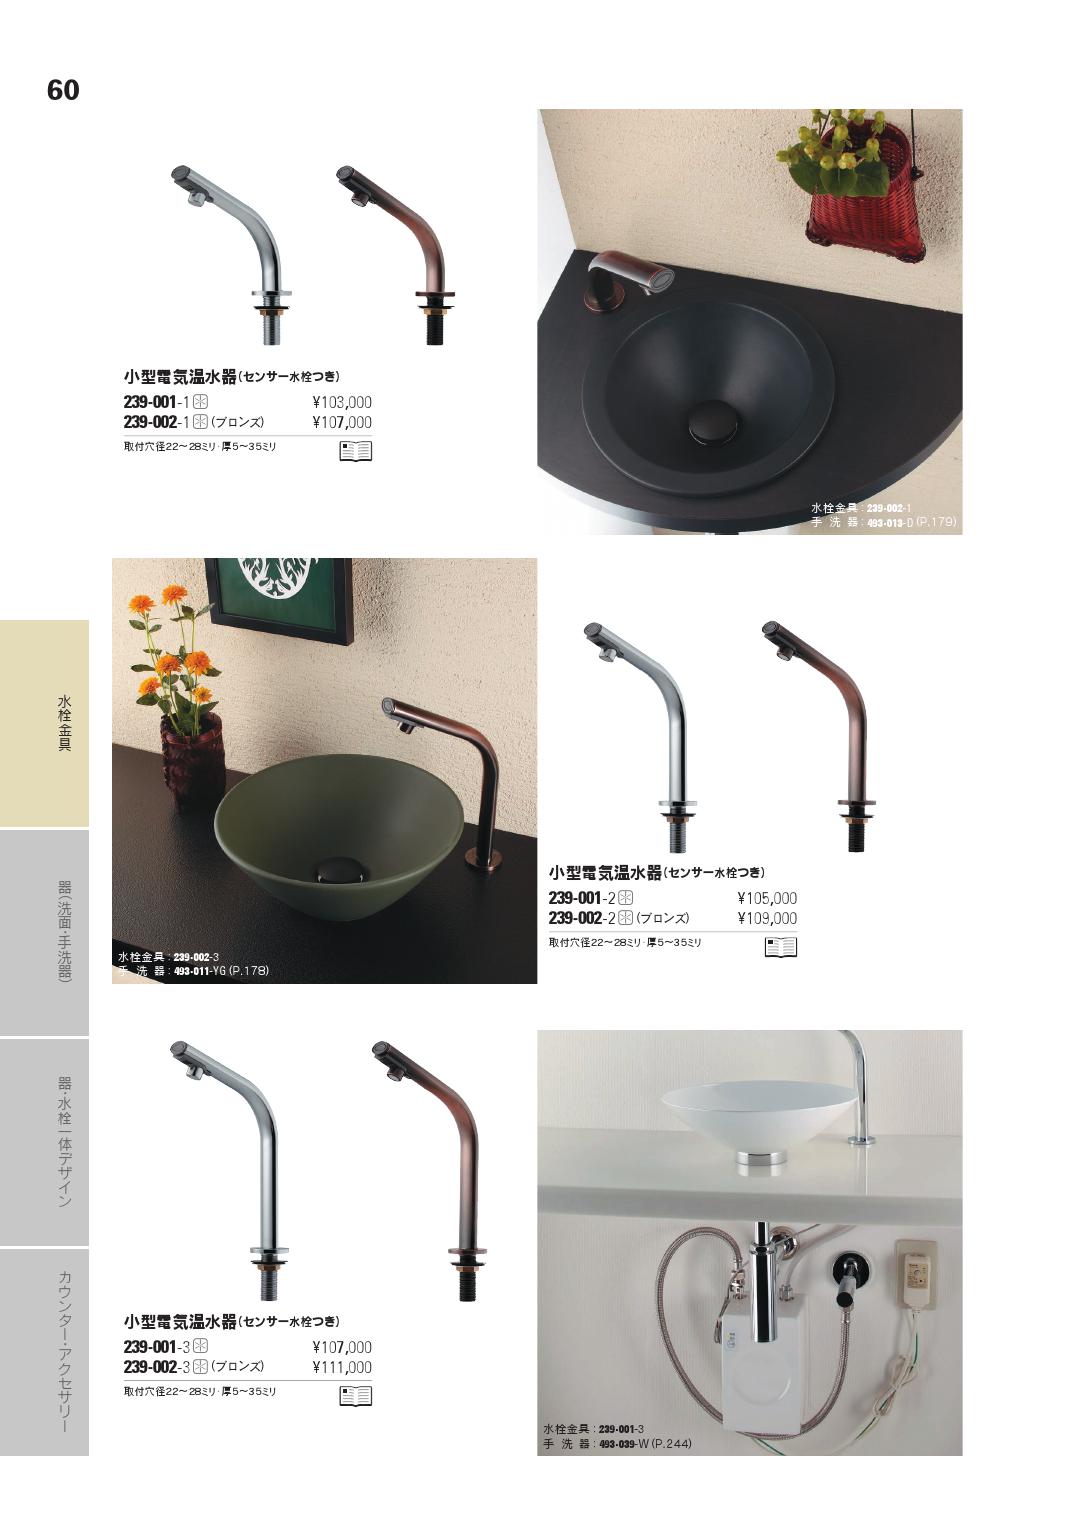 新しい到着 住まい設備ショッピング店 KAKUDAI カクダイ 洗面用 単水栓 特殊水栓 小型電気温水器 センサー水栓付き